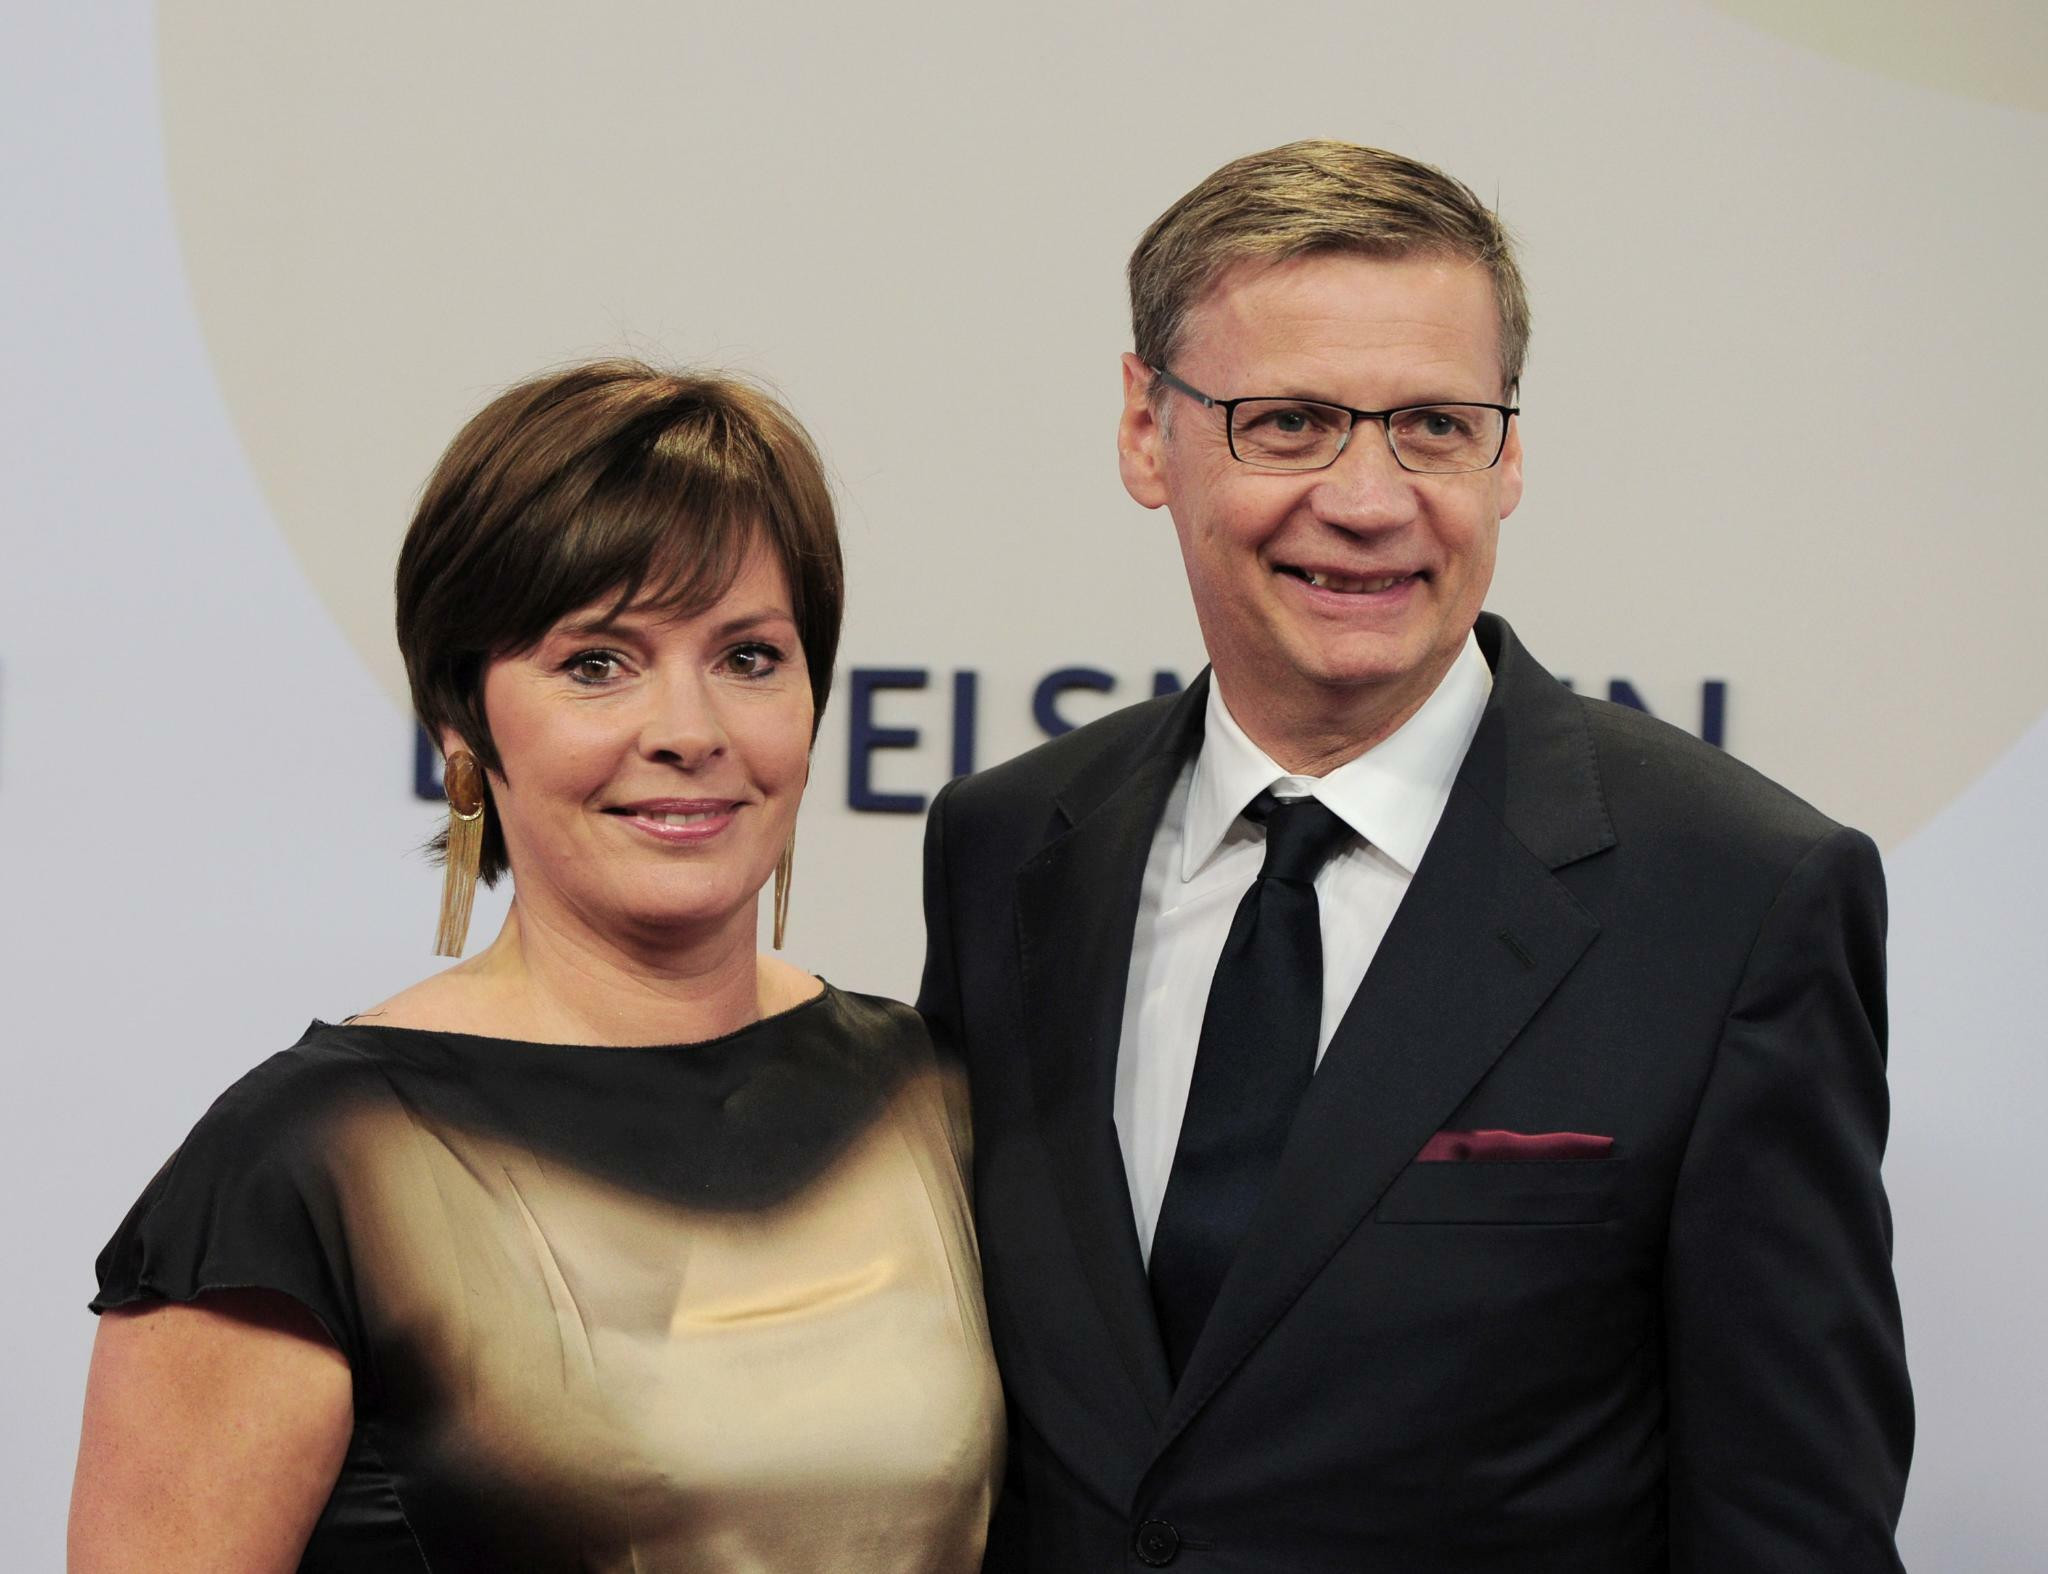 Hochzeit Günther Jauch
 Rechtsstreit mit Jauch Günther Jauch und seine Frau